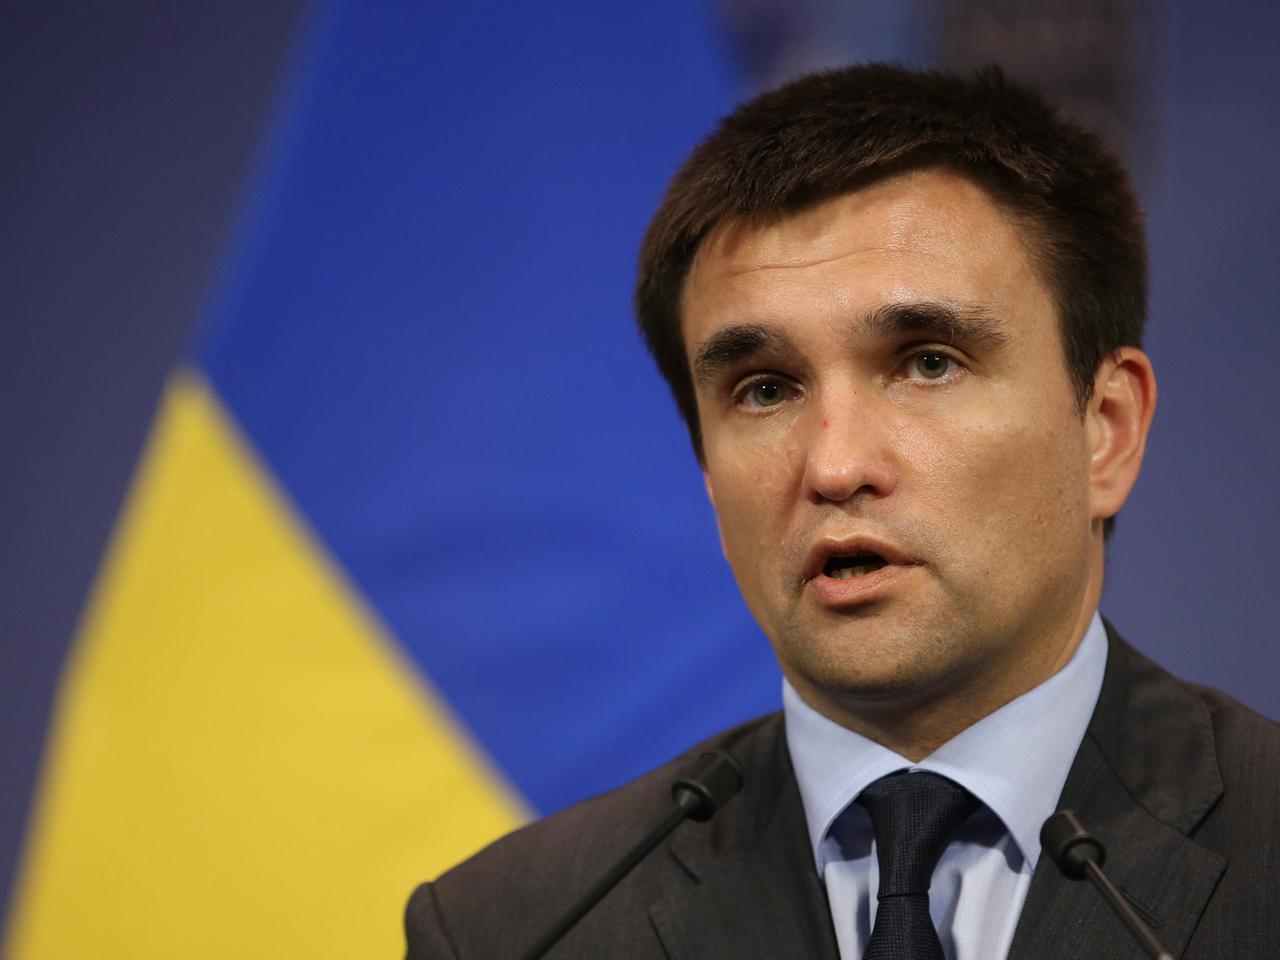 Der ukrainische Außenminster Pawel Klimkin, sprechend, eine gelb-blaue Fahne im Hintergrund.